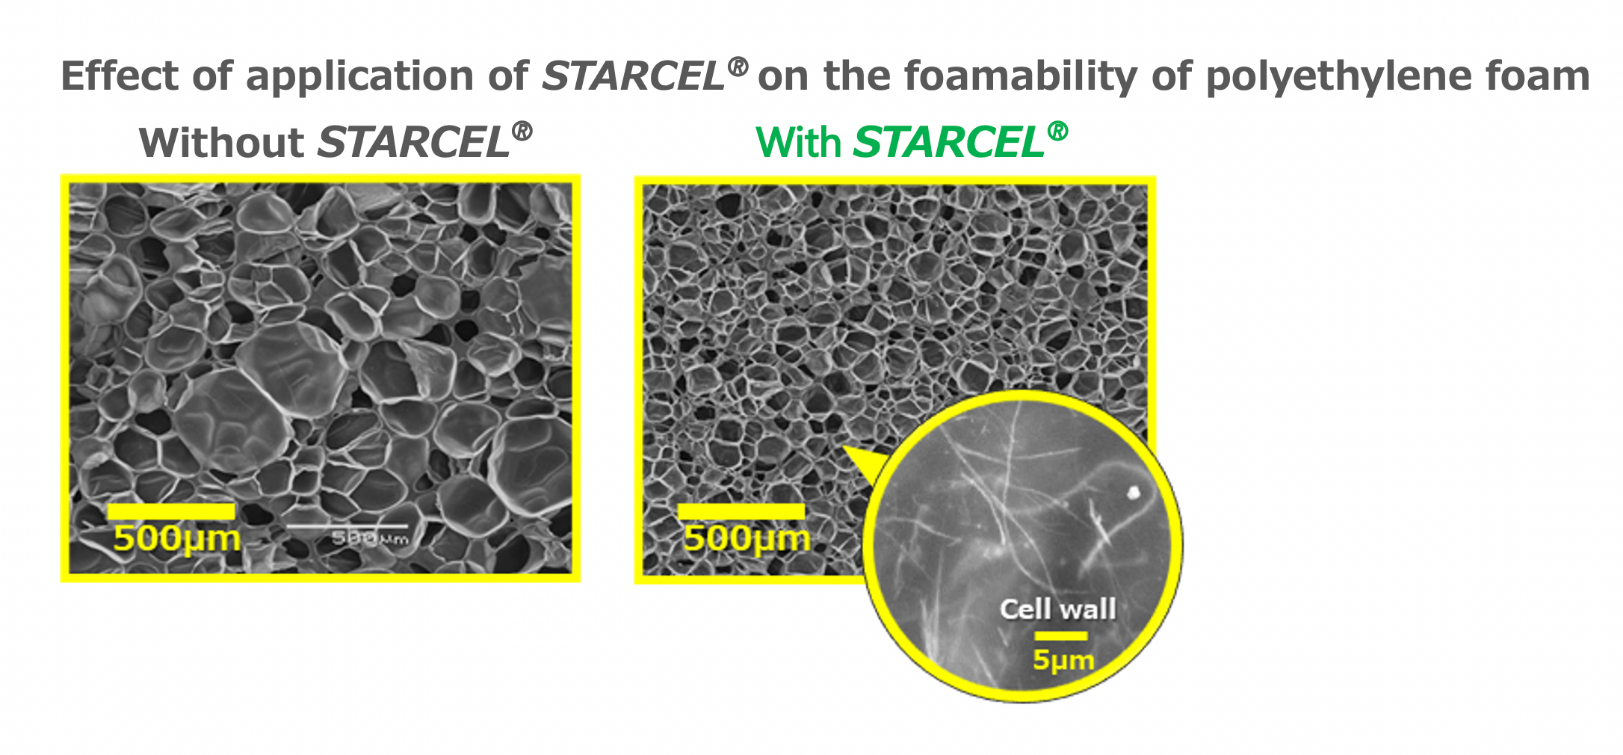 Effect of application of STARCEL® on the foamability of polyethylene foam